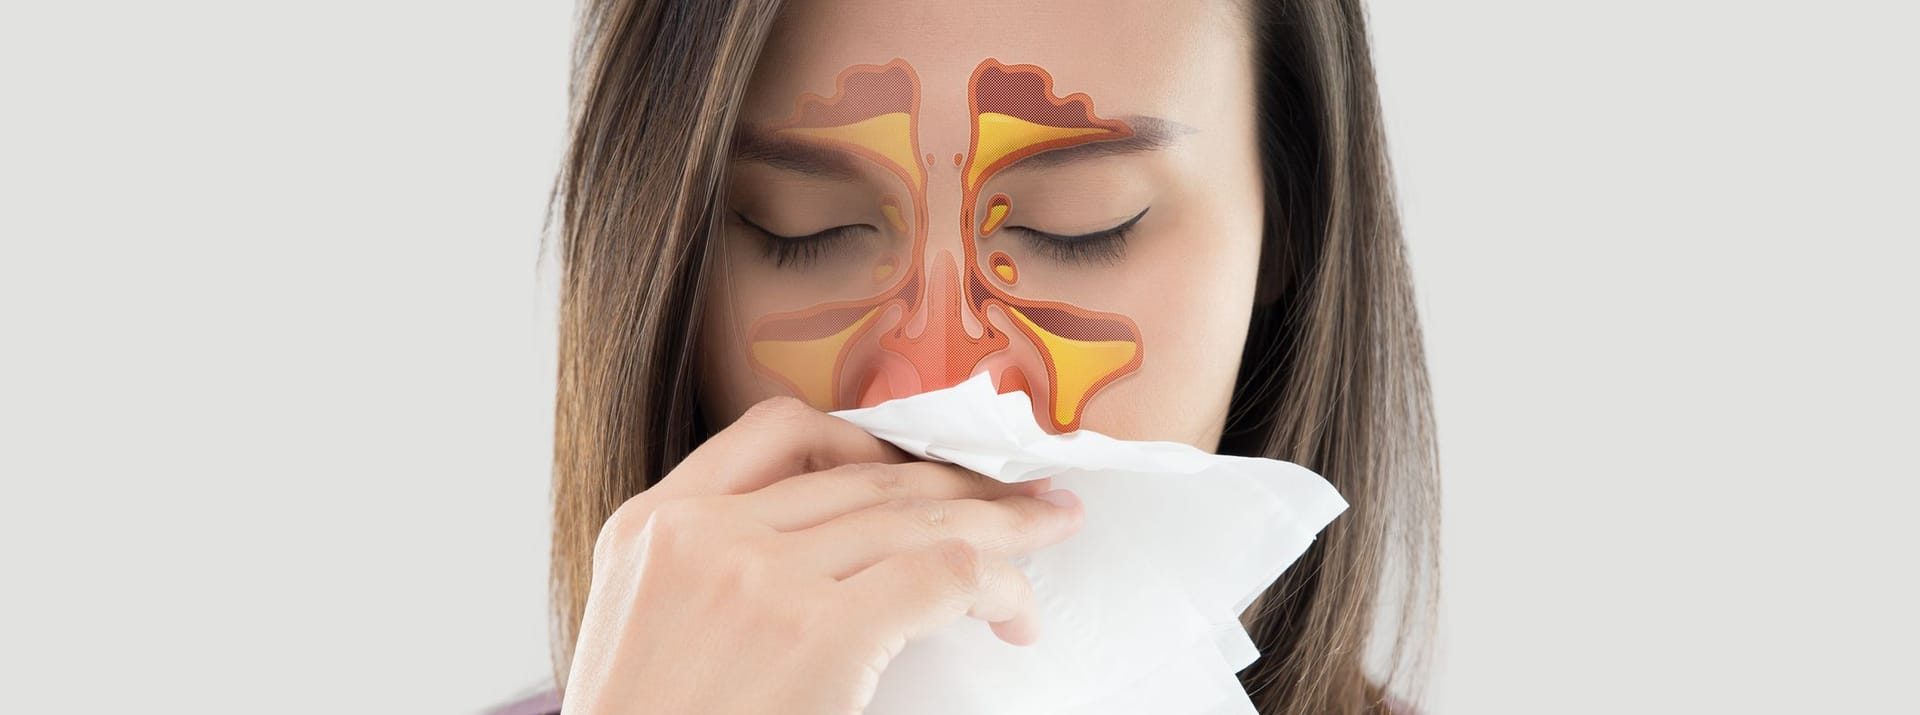 Bei einer Nasennebenhöhlenentzündung ("Sinusitis") sind die Schleimhäute entzündet, welche zu den Nasennebenhöhlen zählen. Dazu gehören die Stirnhöhlen, die Siebbeinzellen und die Keilbein- und Kieferhöhlen. Sie sind für die Bildung der Flüssigkeit zuständig, welche über Nase und Rachen abfließt.